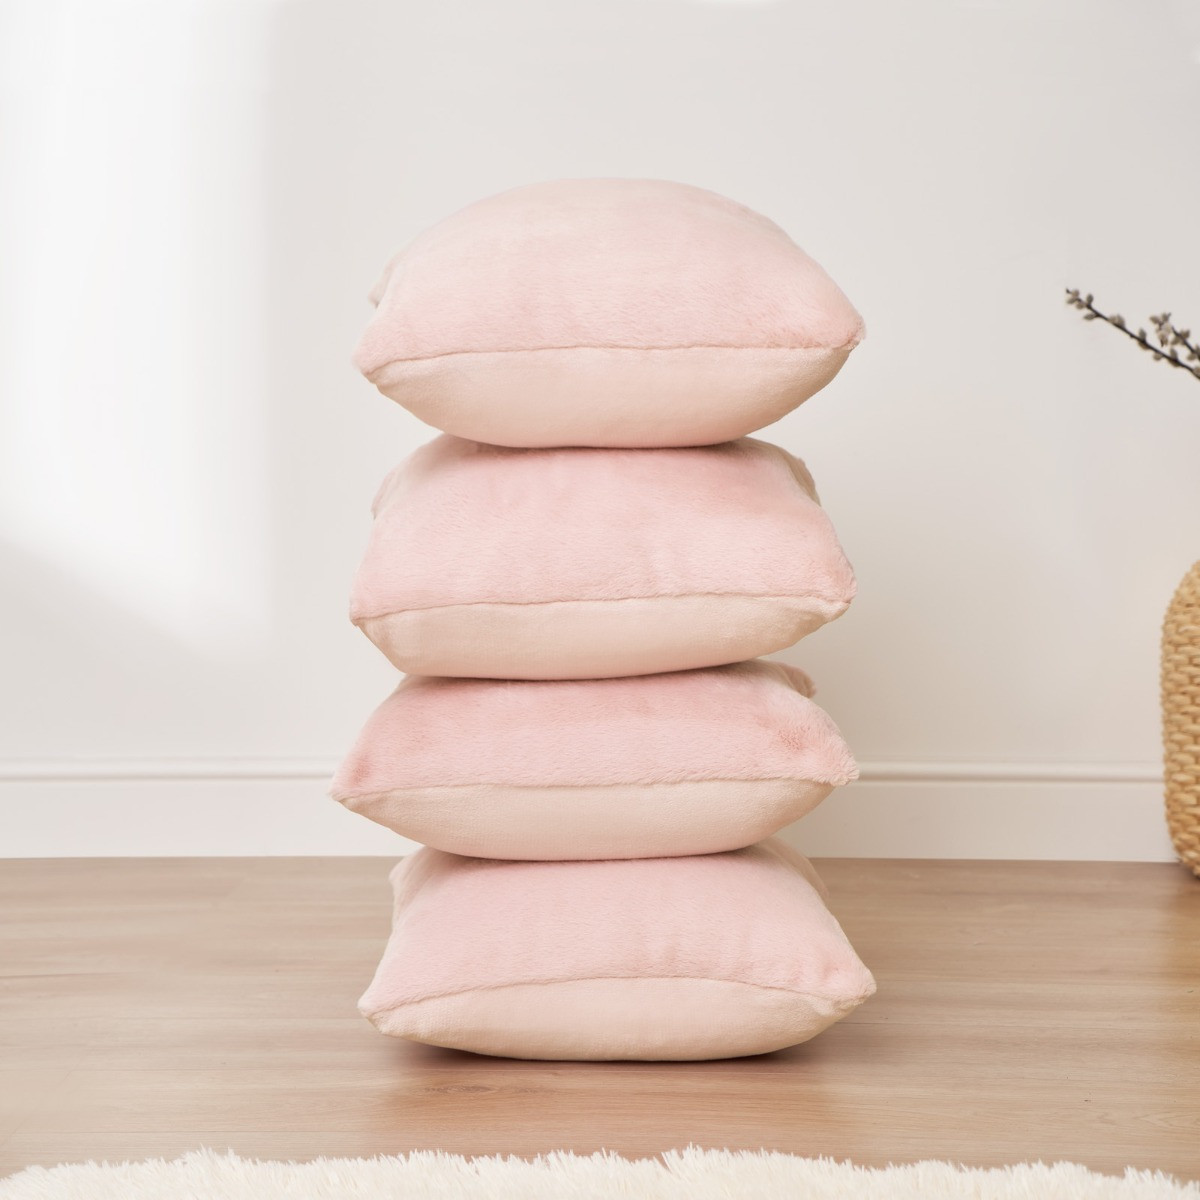 Sienna Faux Fur Cushion Covers - Blush>